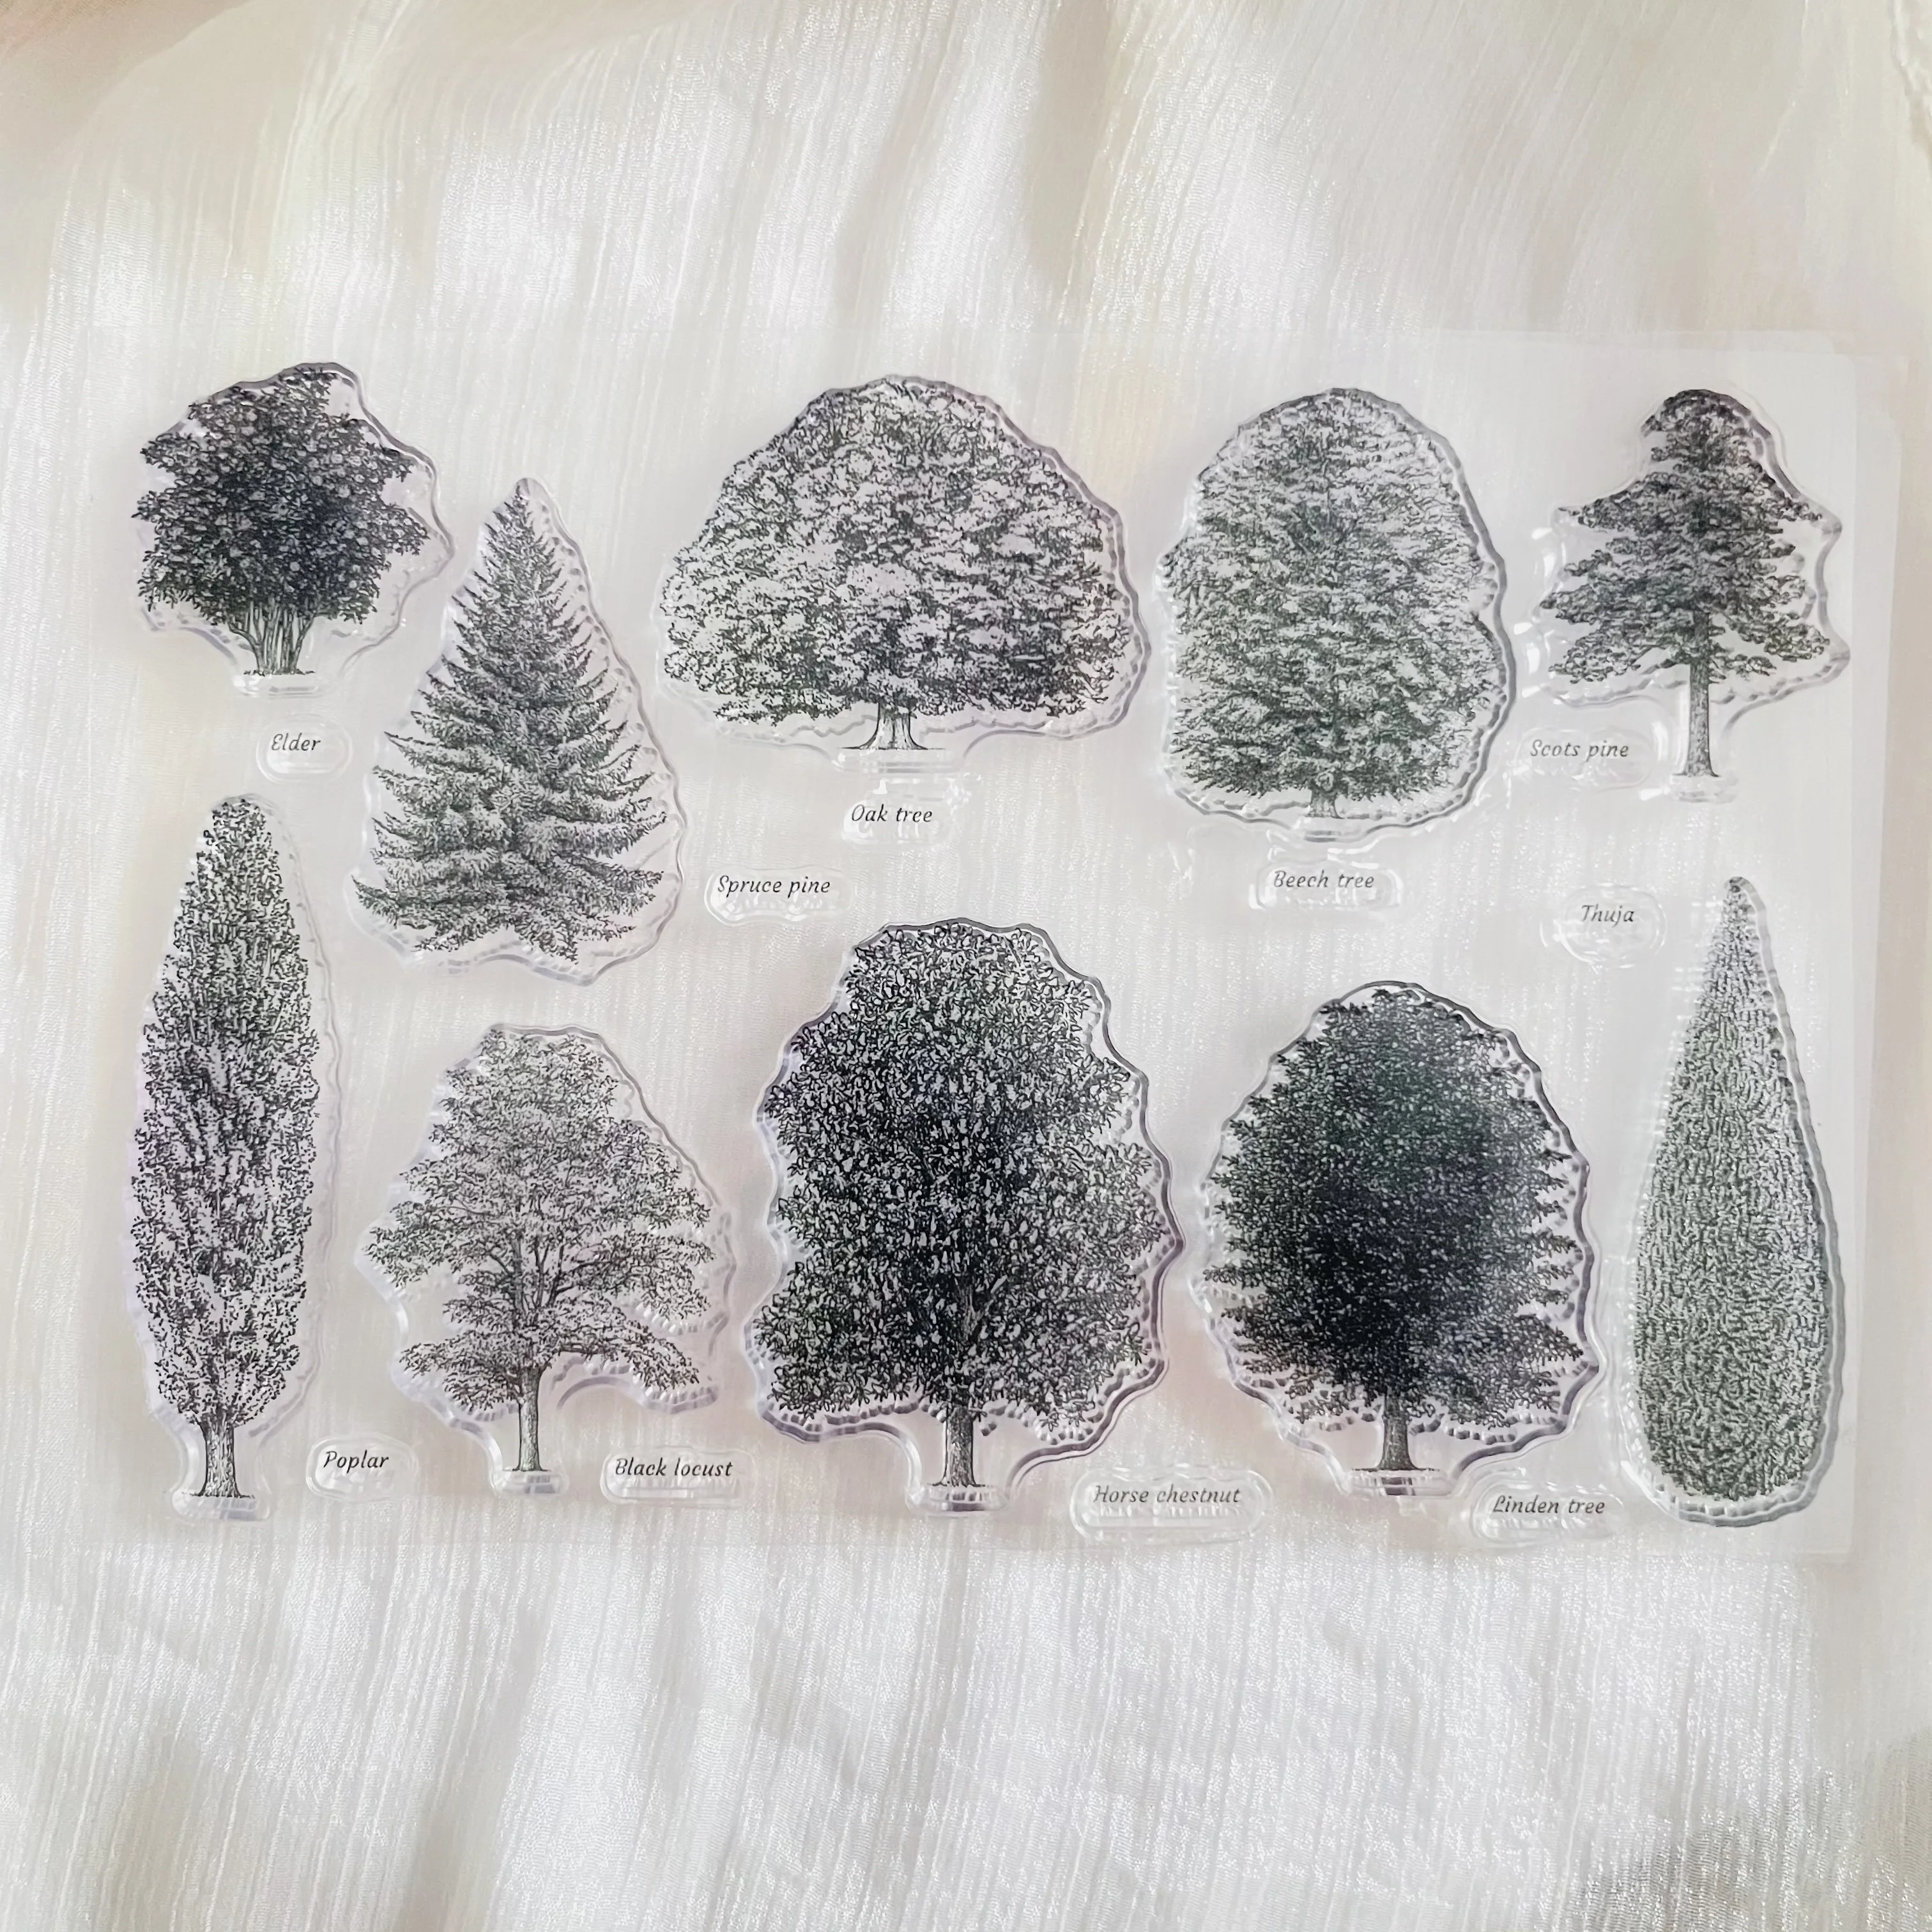 различные прозрачные штампы в виде дерева, прозрачный силиконовый штамп, лист для скрапбукинга, украшение фотоальбома